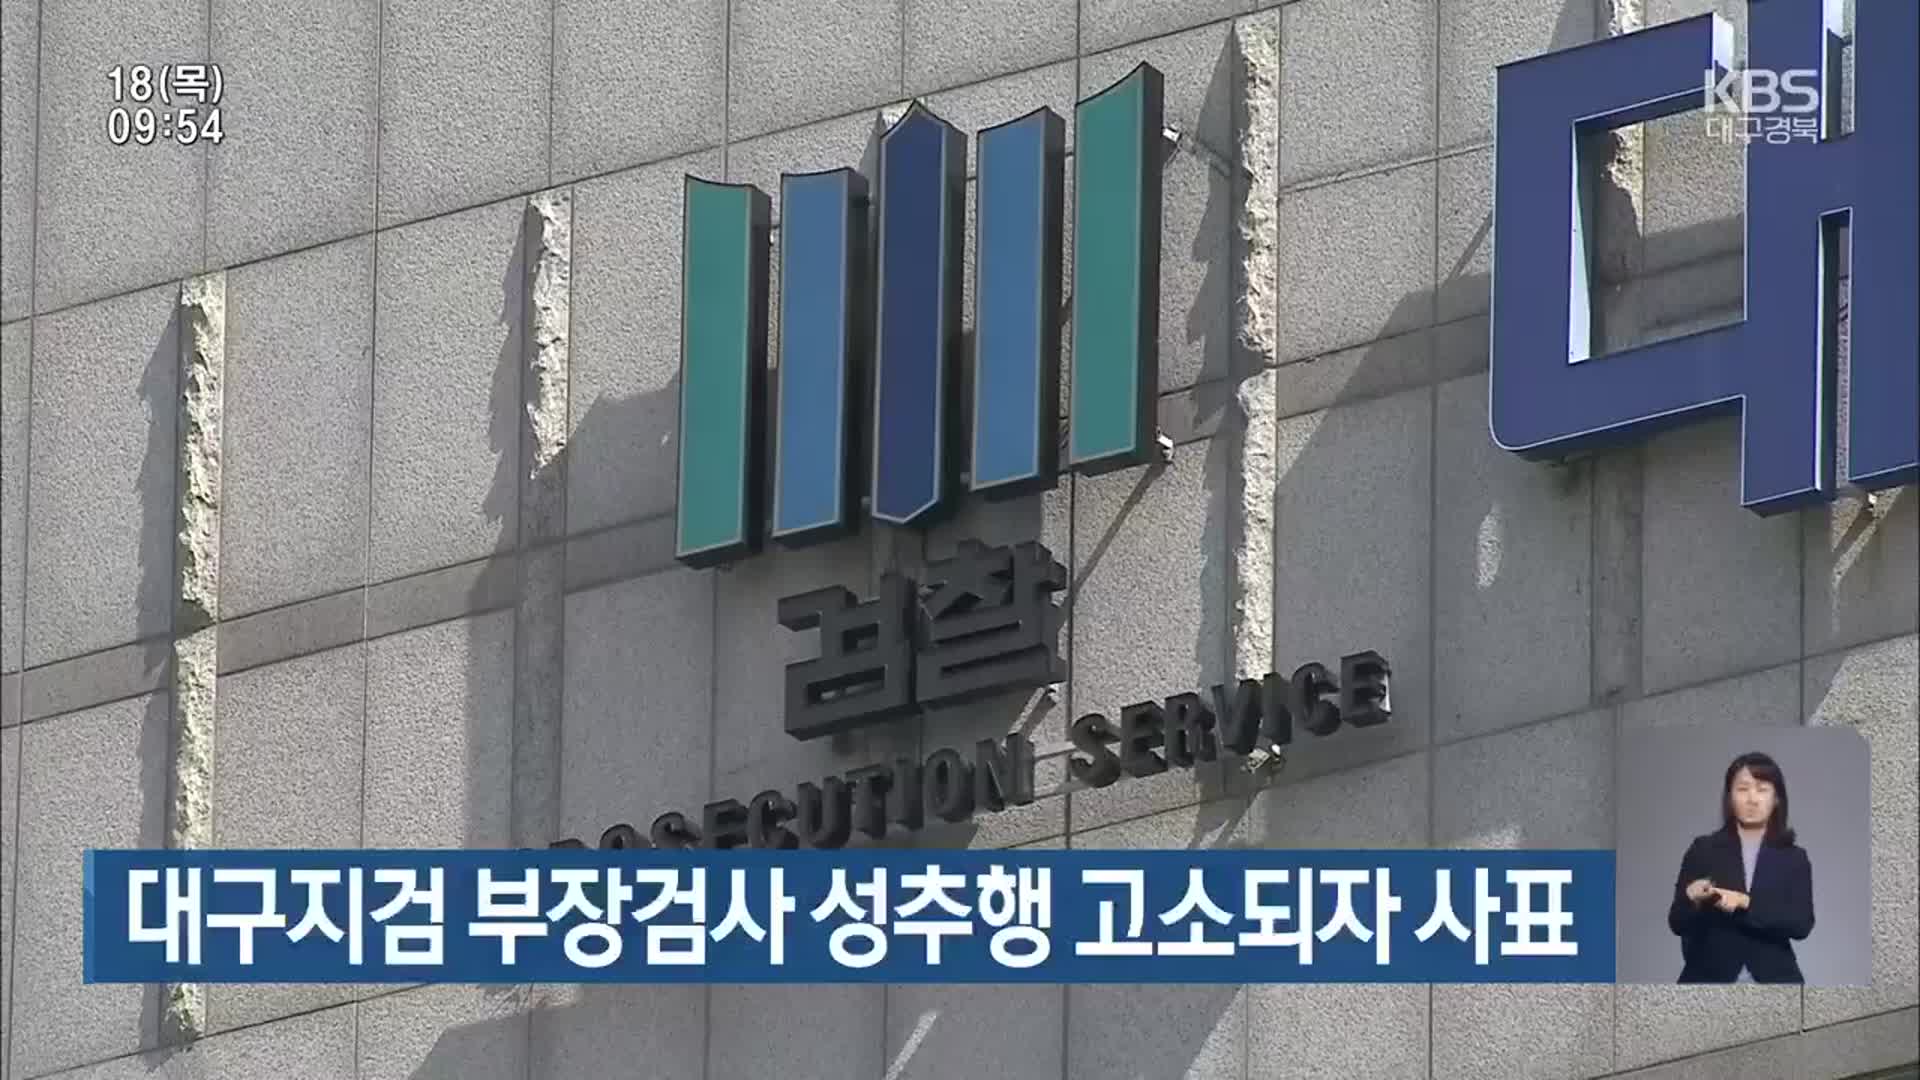 대구지검 부장검사 성추행 고소되자 사표